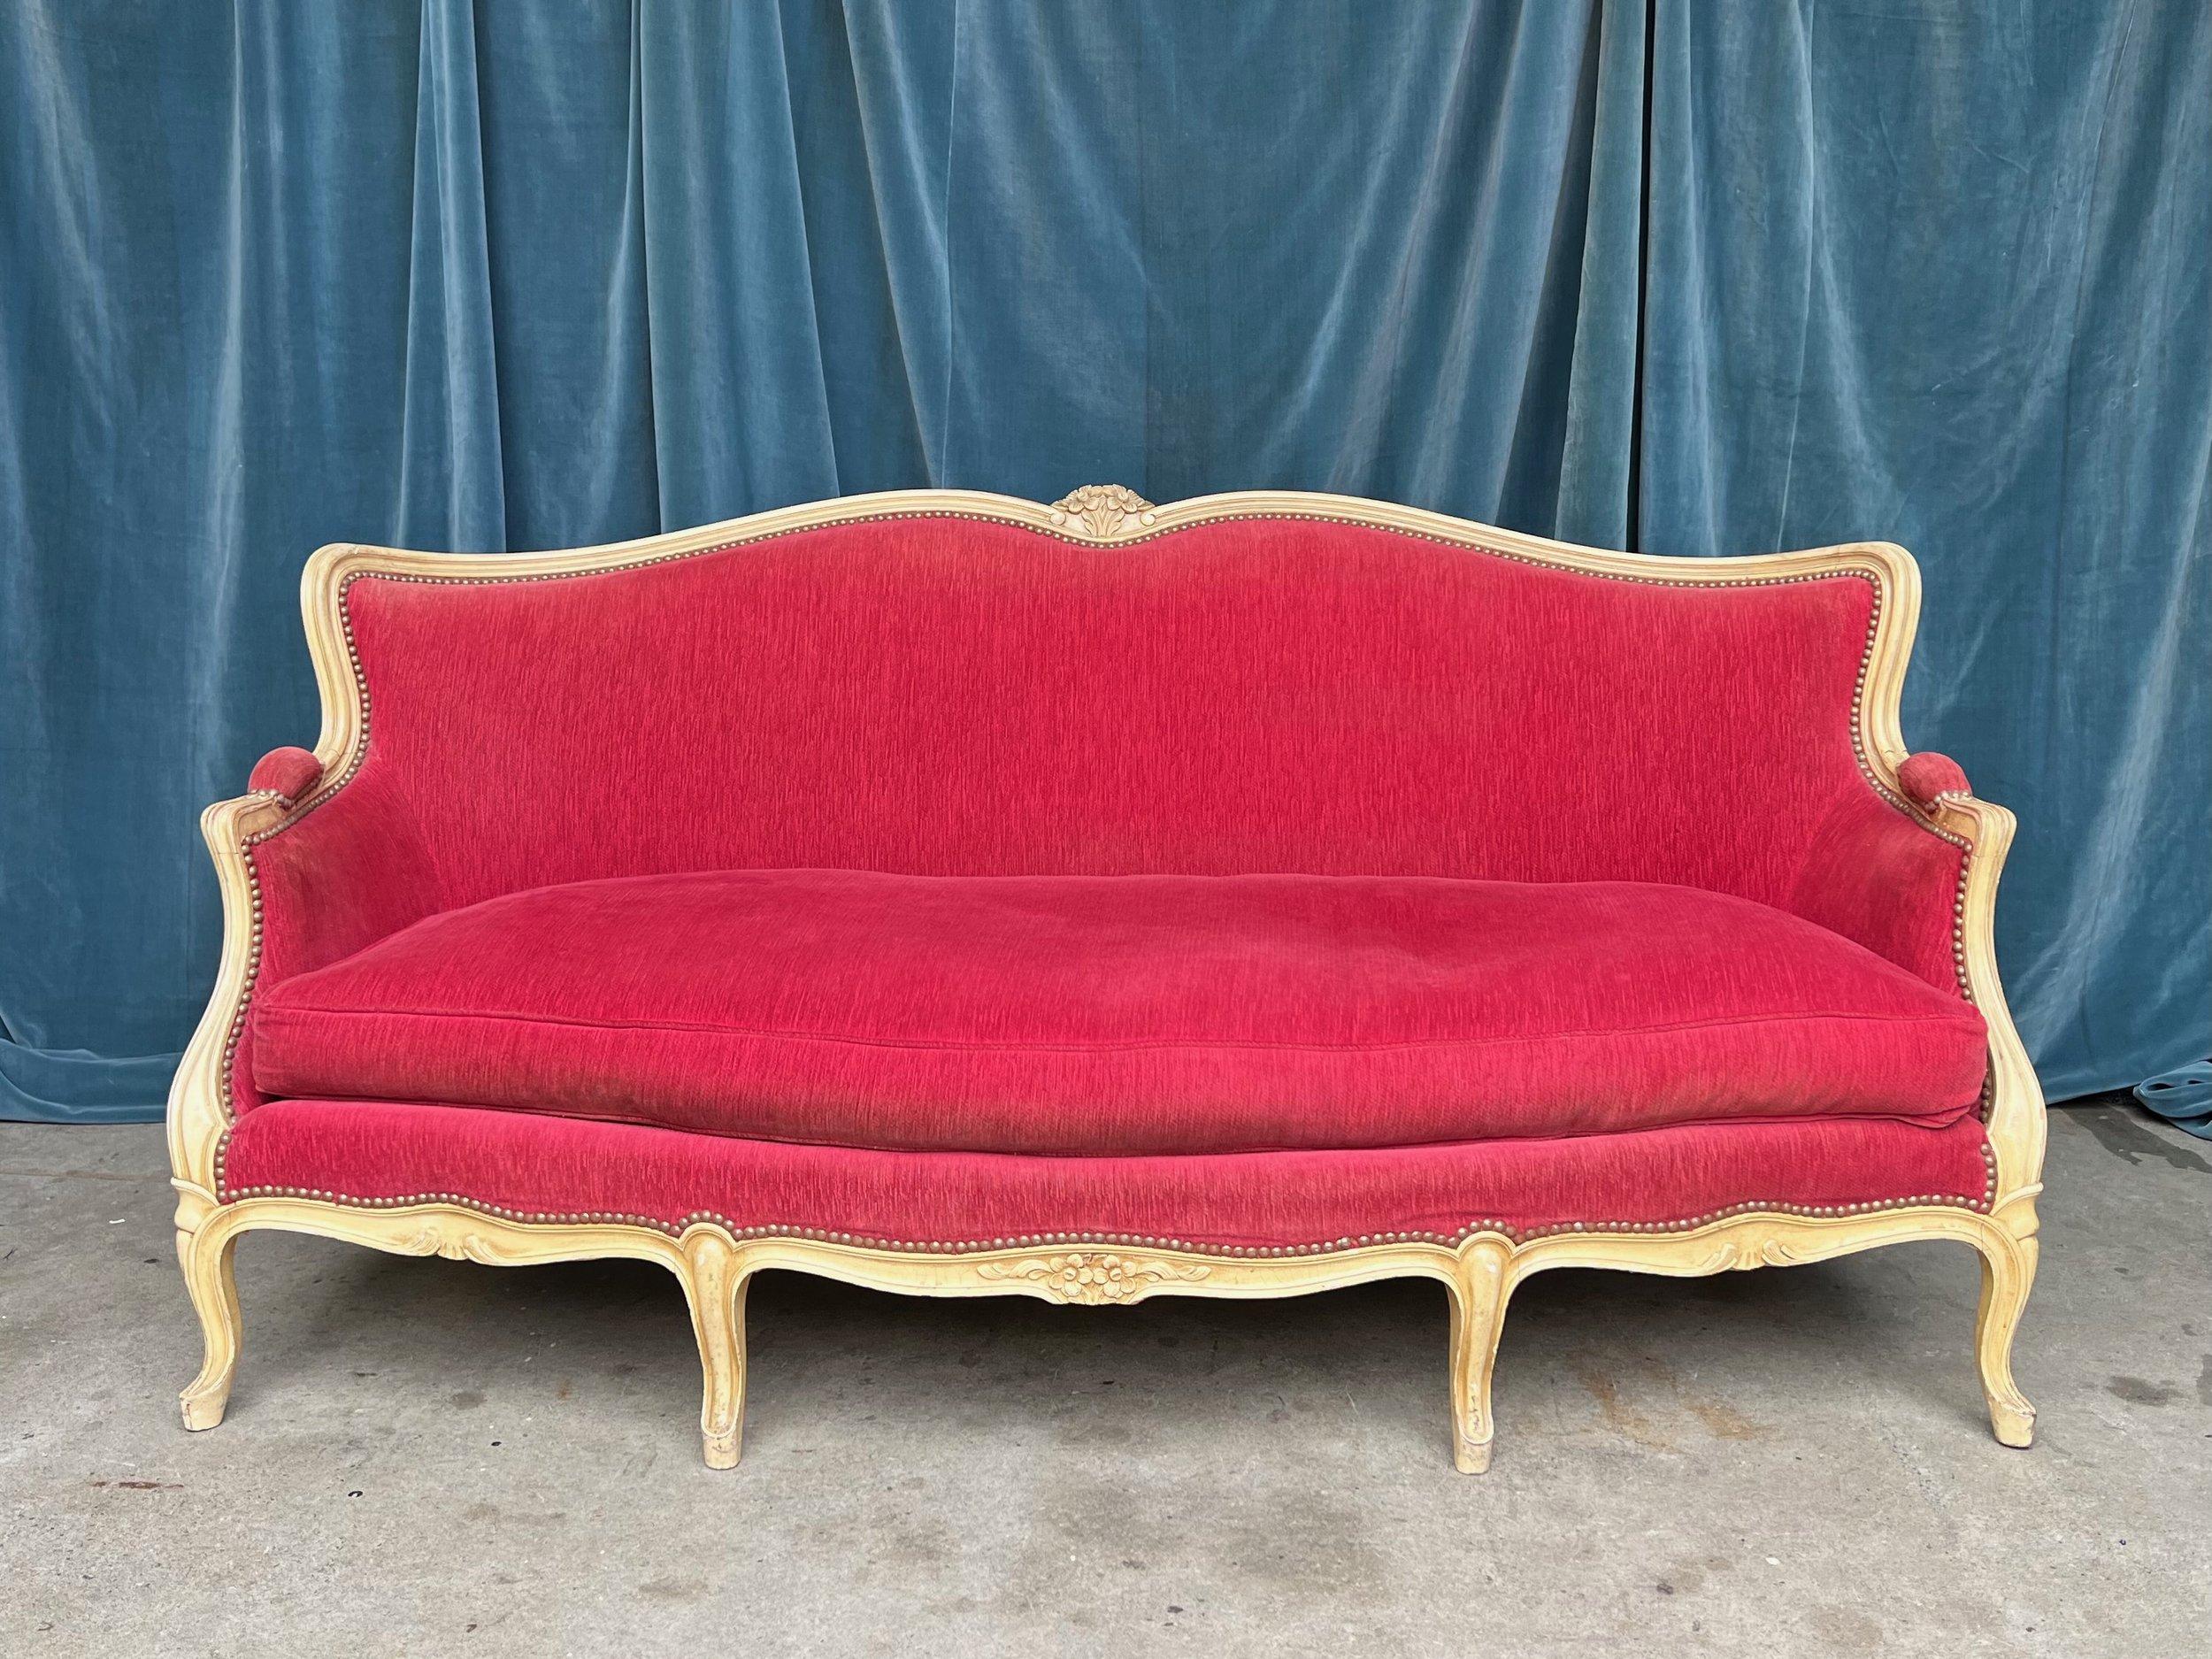 Ein atemberaubendes französisches Sofa im Louis-XV-Stil aus den 1920er Jahren, gepolstert mit reichem rotem Samt und einem cremefarbenen Holzrahmen. Die Messingnageldetails verleihen einen zusätzlichen Hauch von Eleganz und Raffinesse. Das Sofa ist